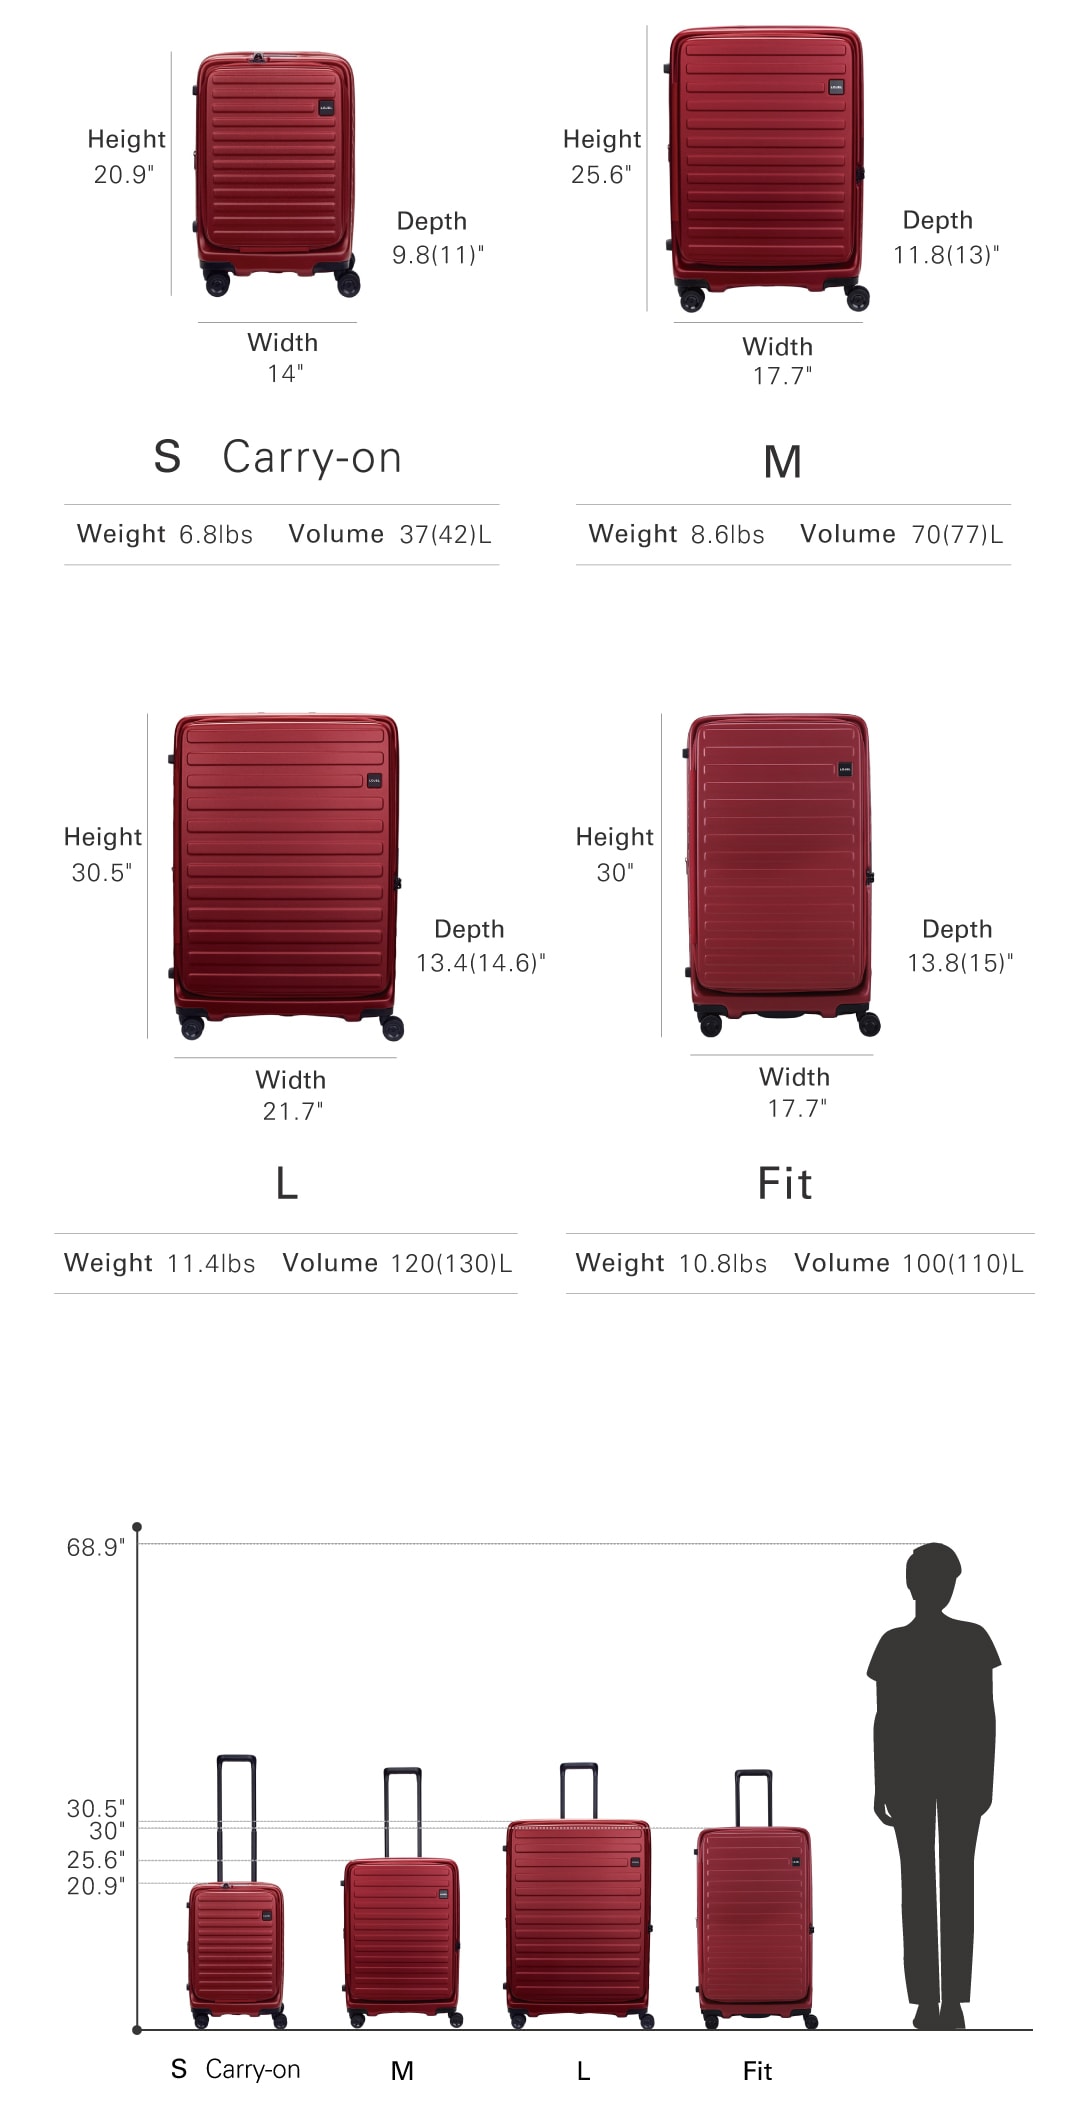 The Luggage Set | LOJEL USA